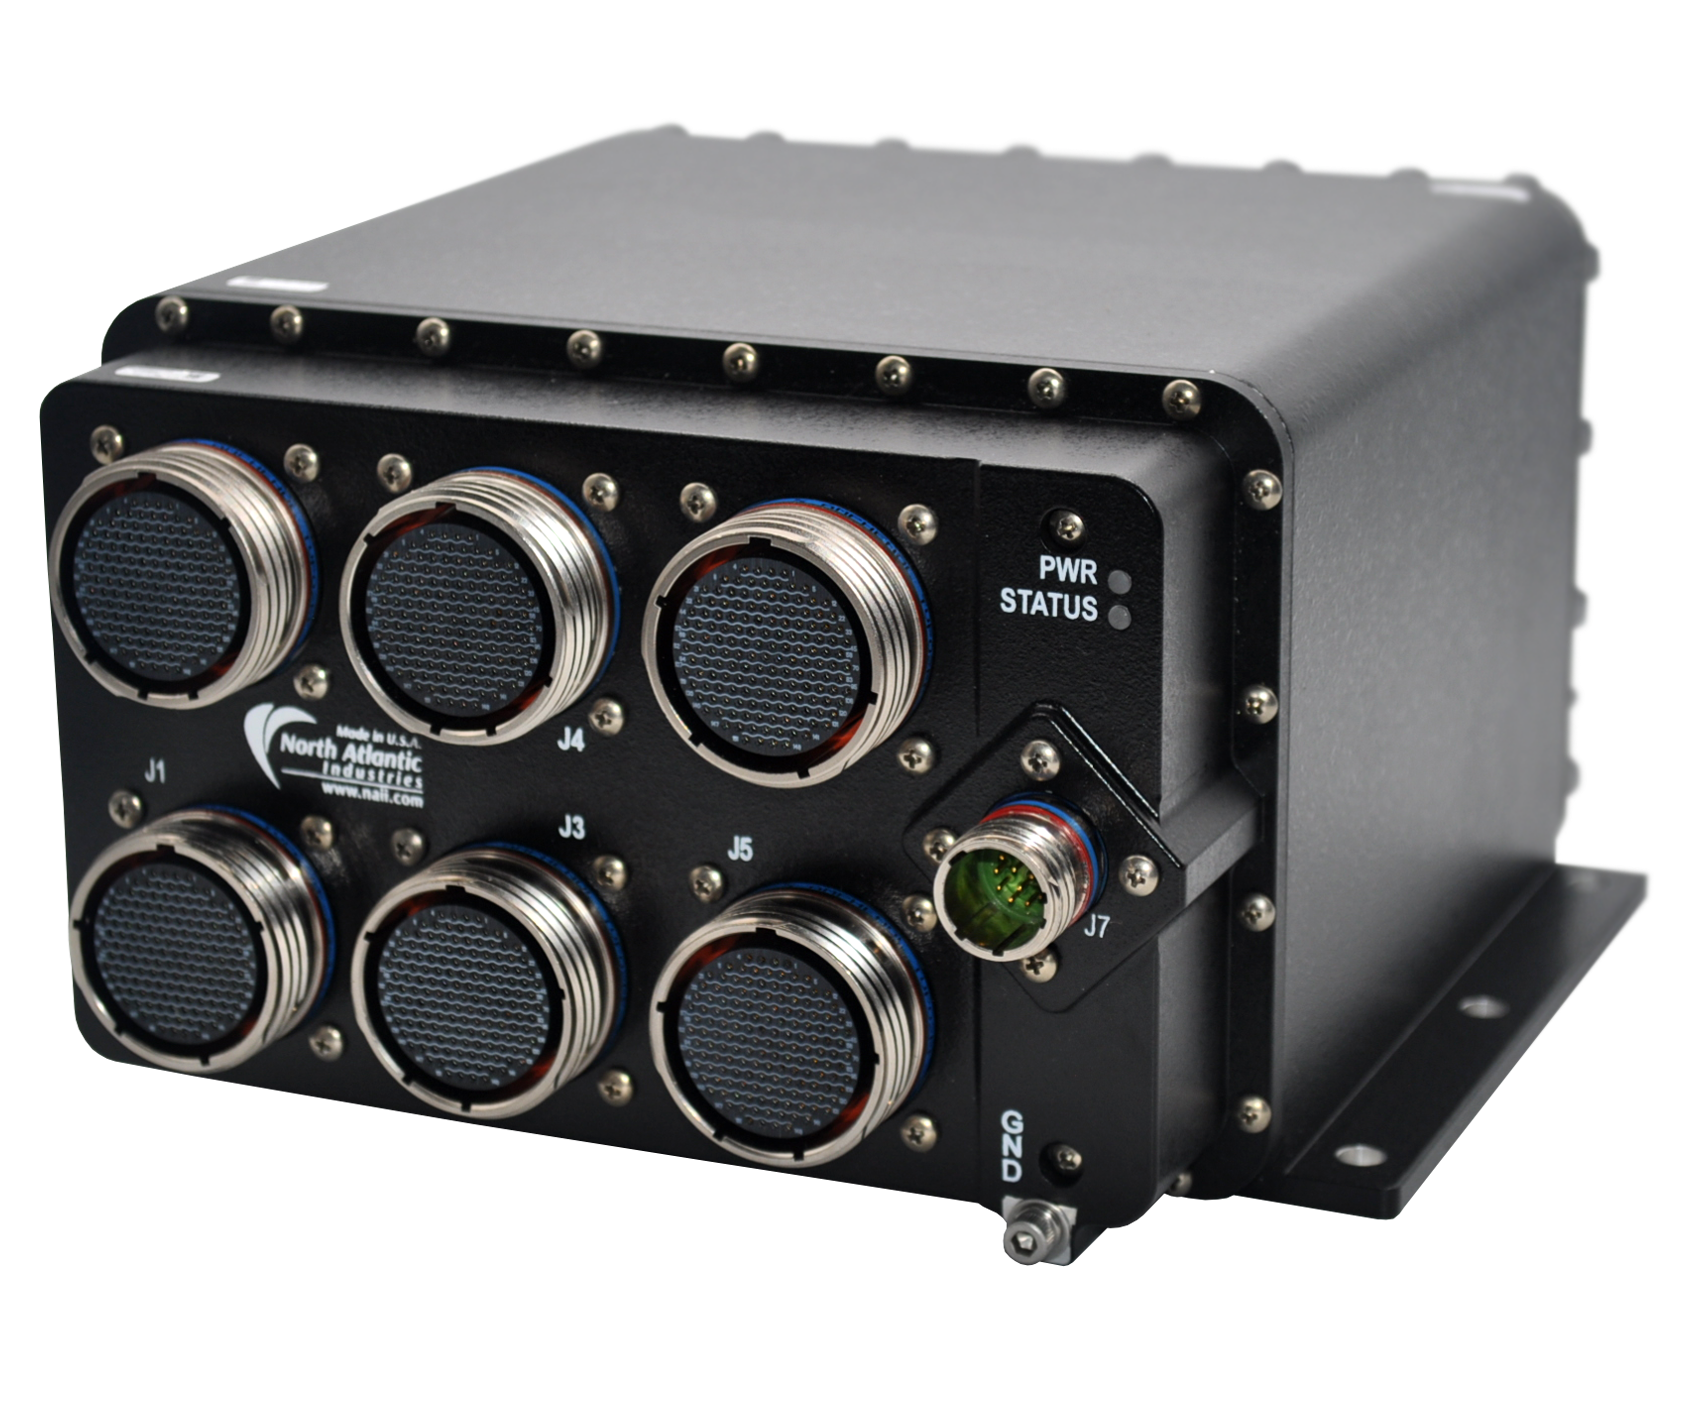 North Atlantic SIU34-RIUVARM-01 Remote Interface Units (RIU)